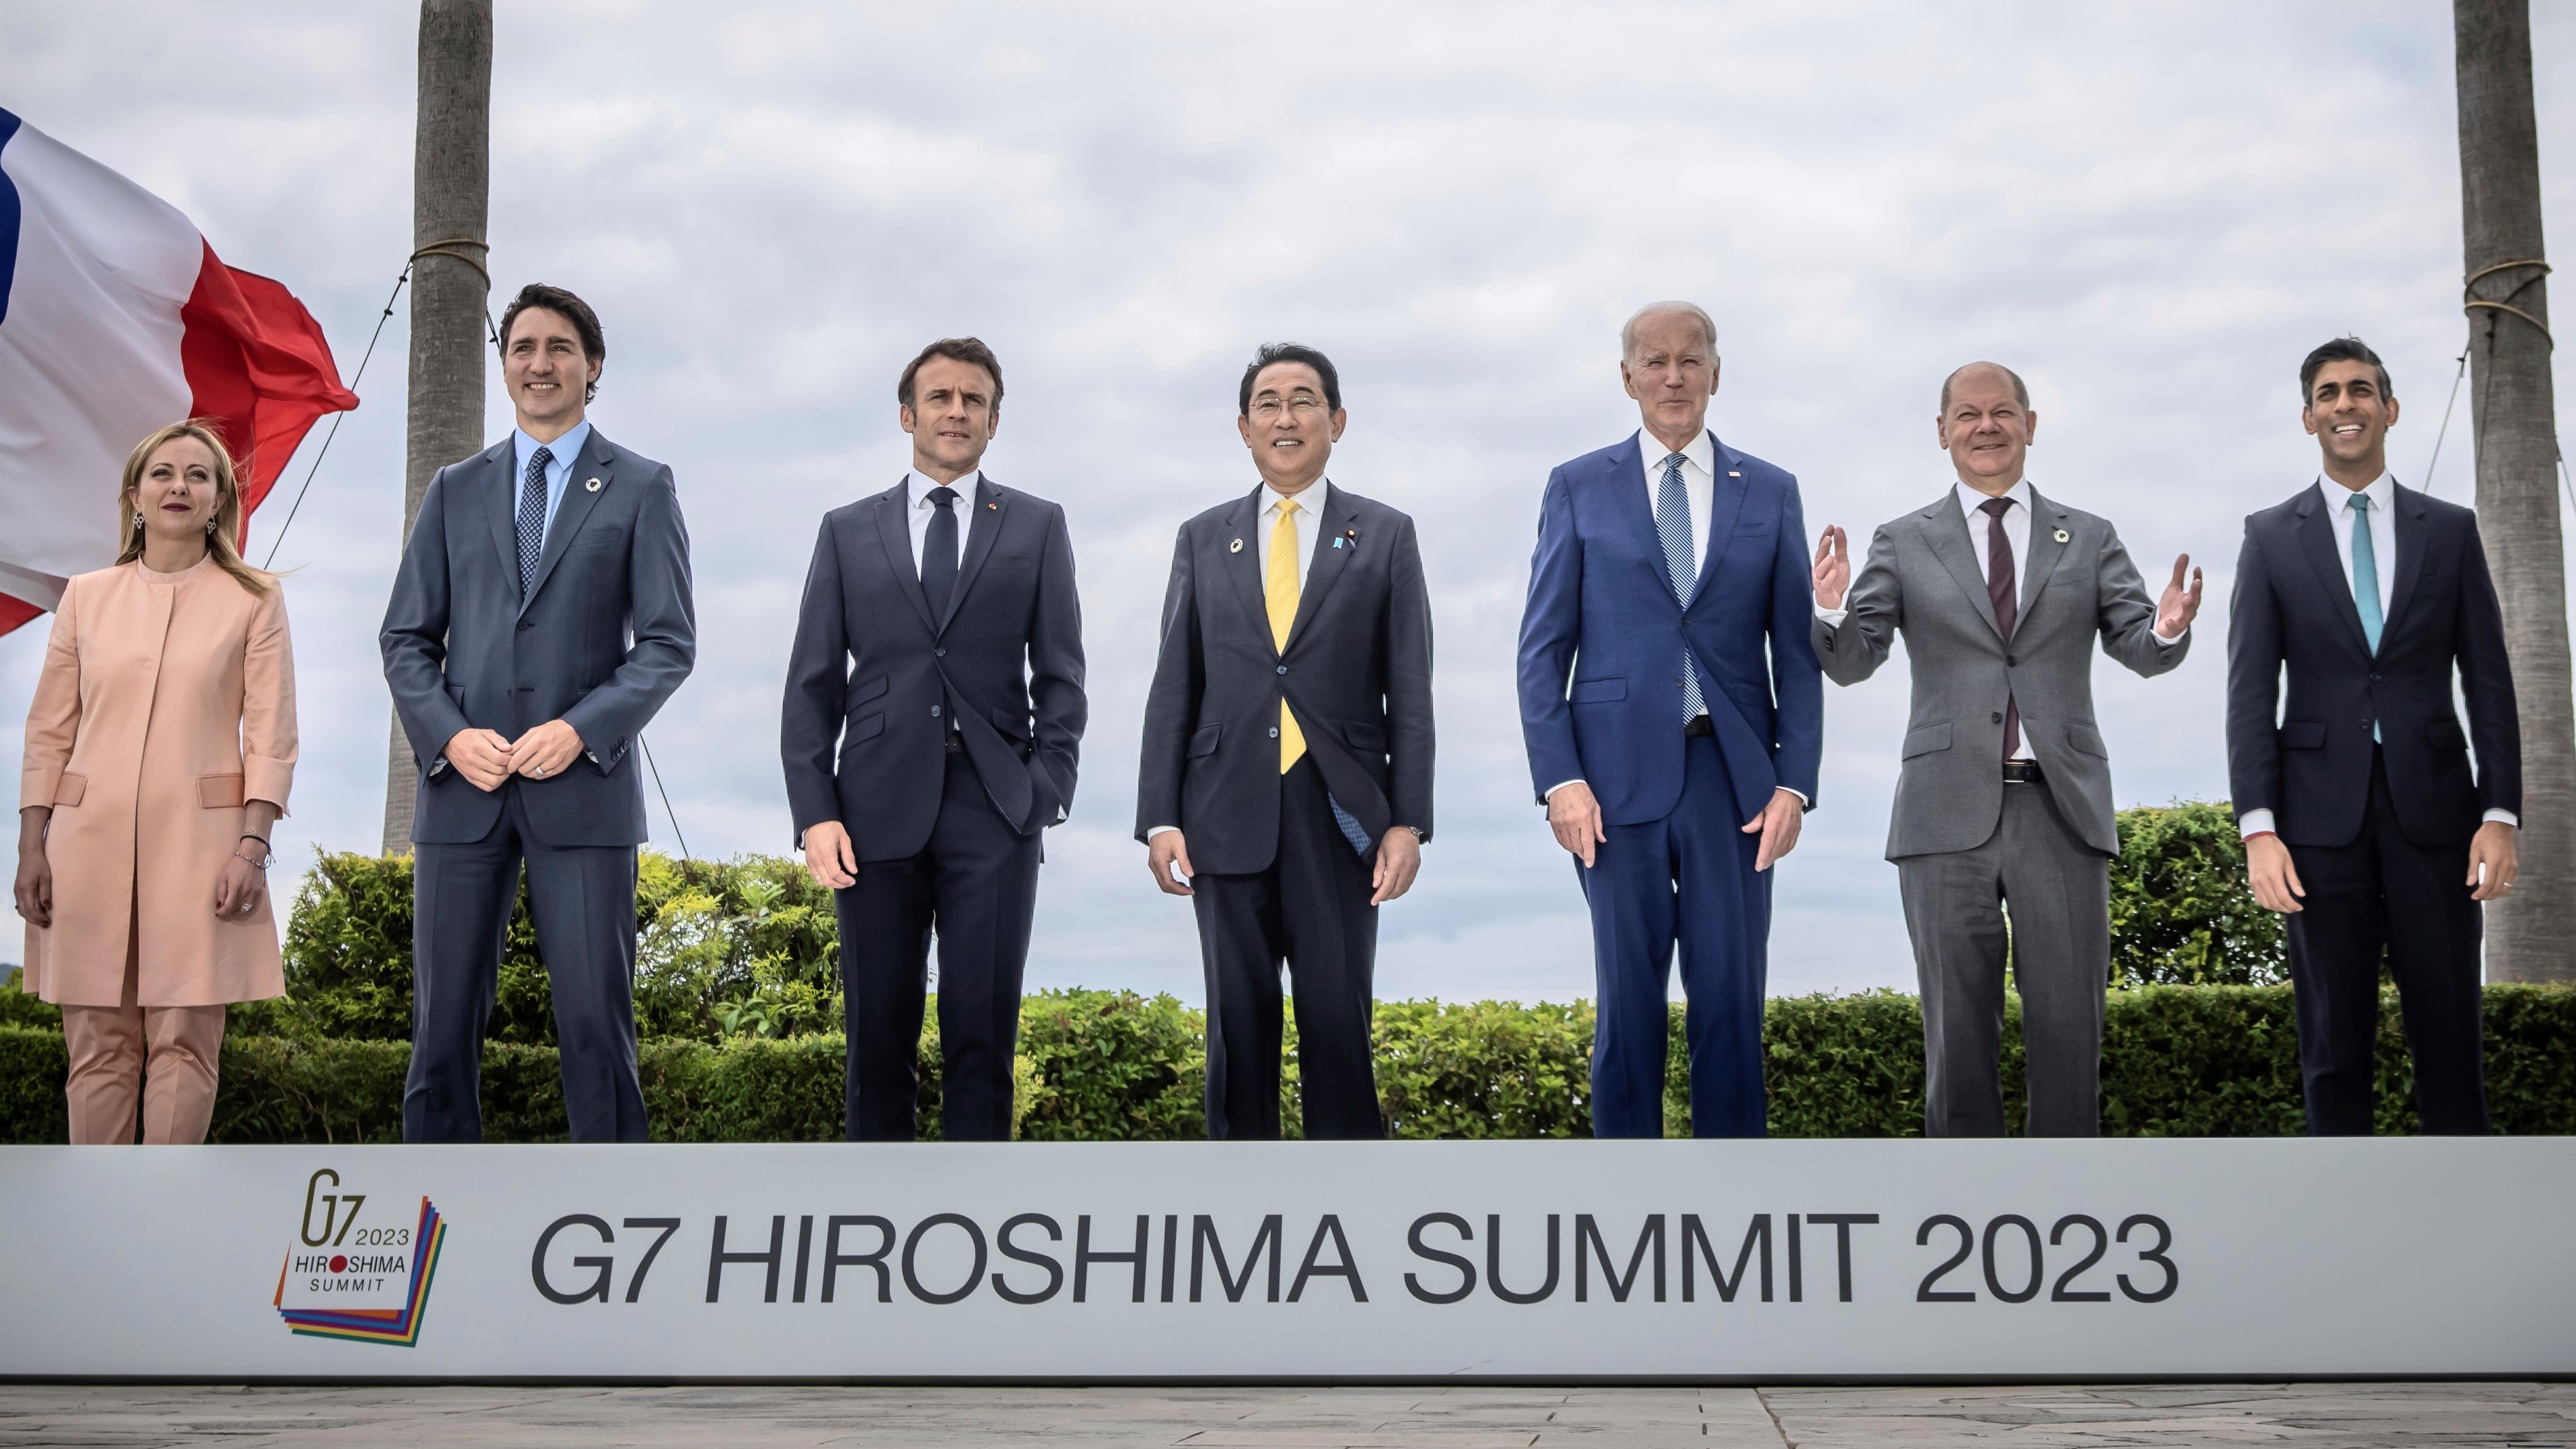 2023 年 G7 峰会期间，讨论围绕中国经济增长、全球南方国家的利益、乌克兰持续的战争以及与俄罗斯的关系等相互交织的问题展开。